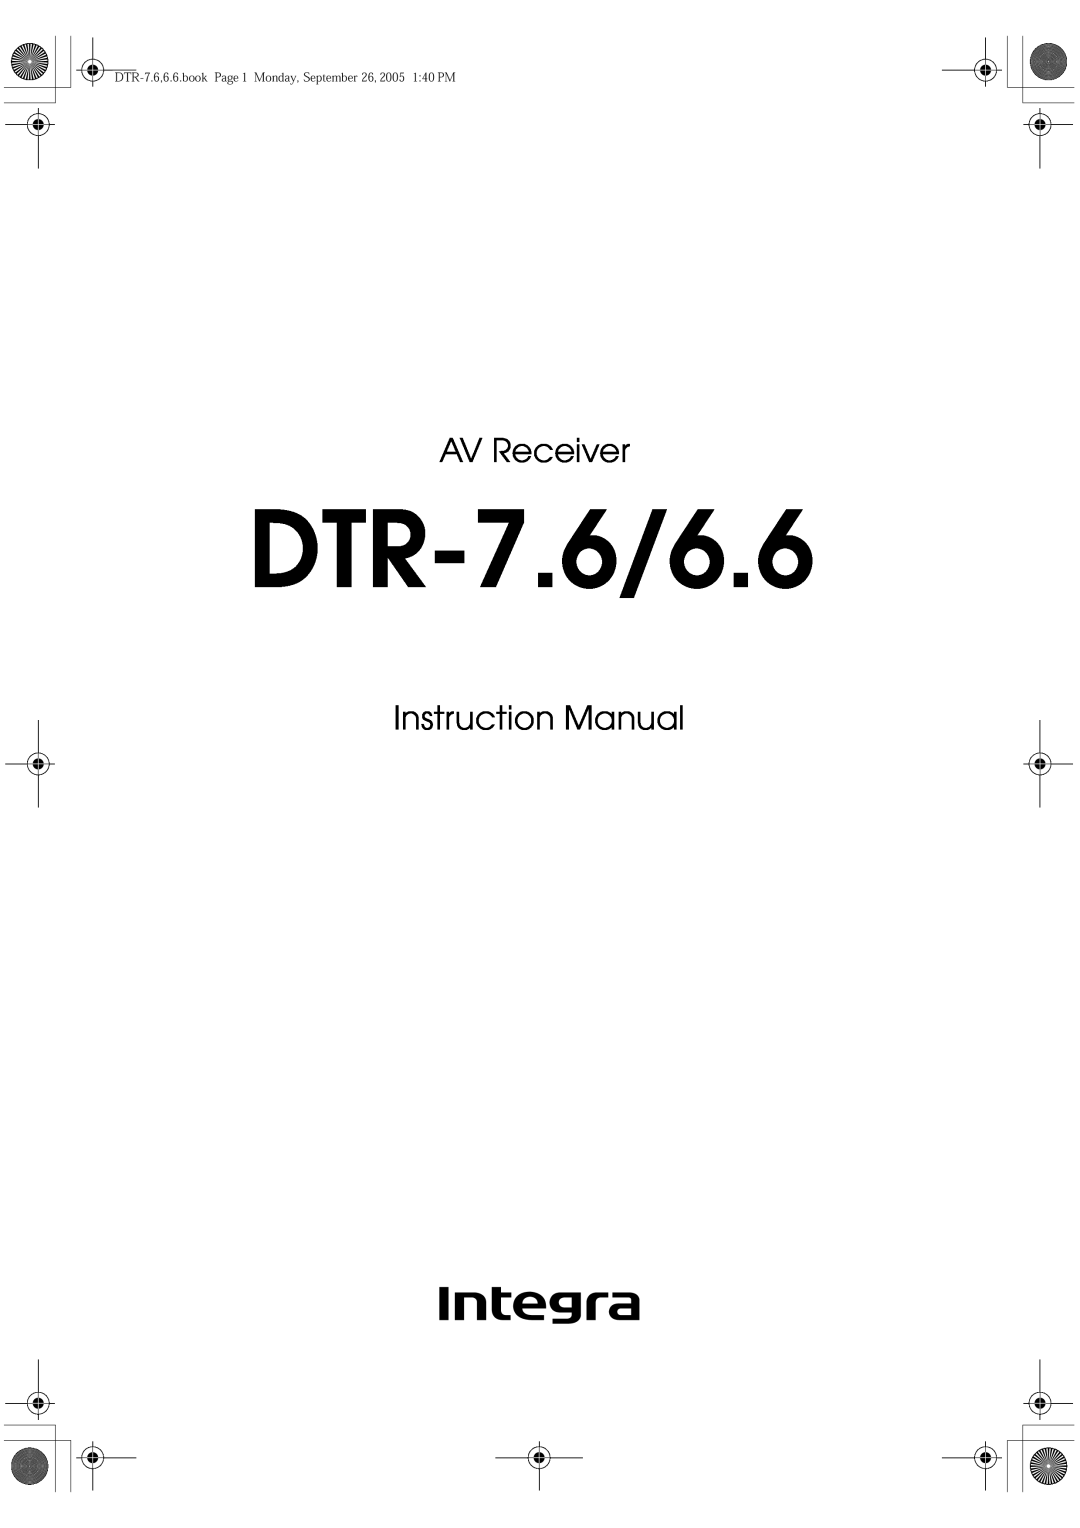 Integra DTR-7.6/6.6 instruction manual AV Receiver, Instruction Manual 